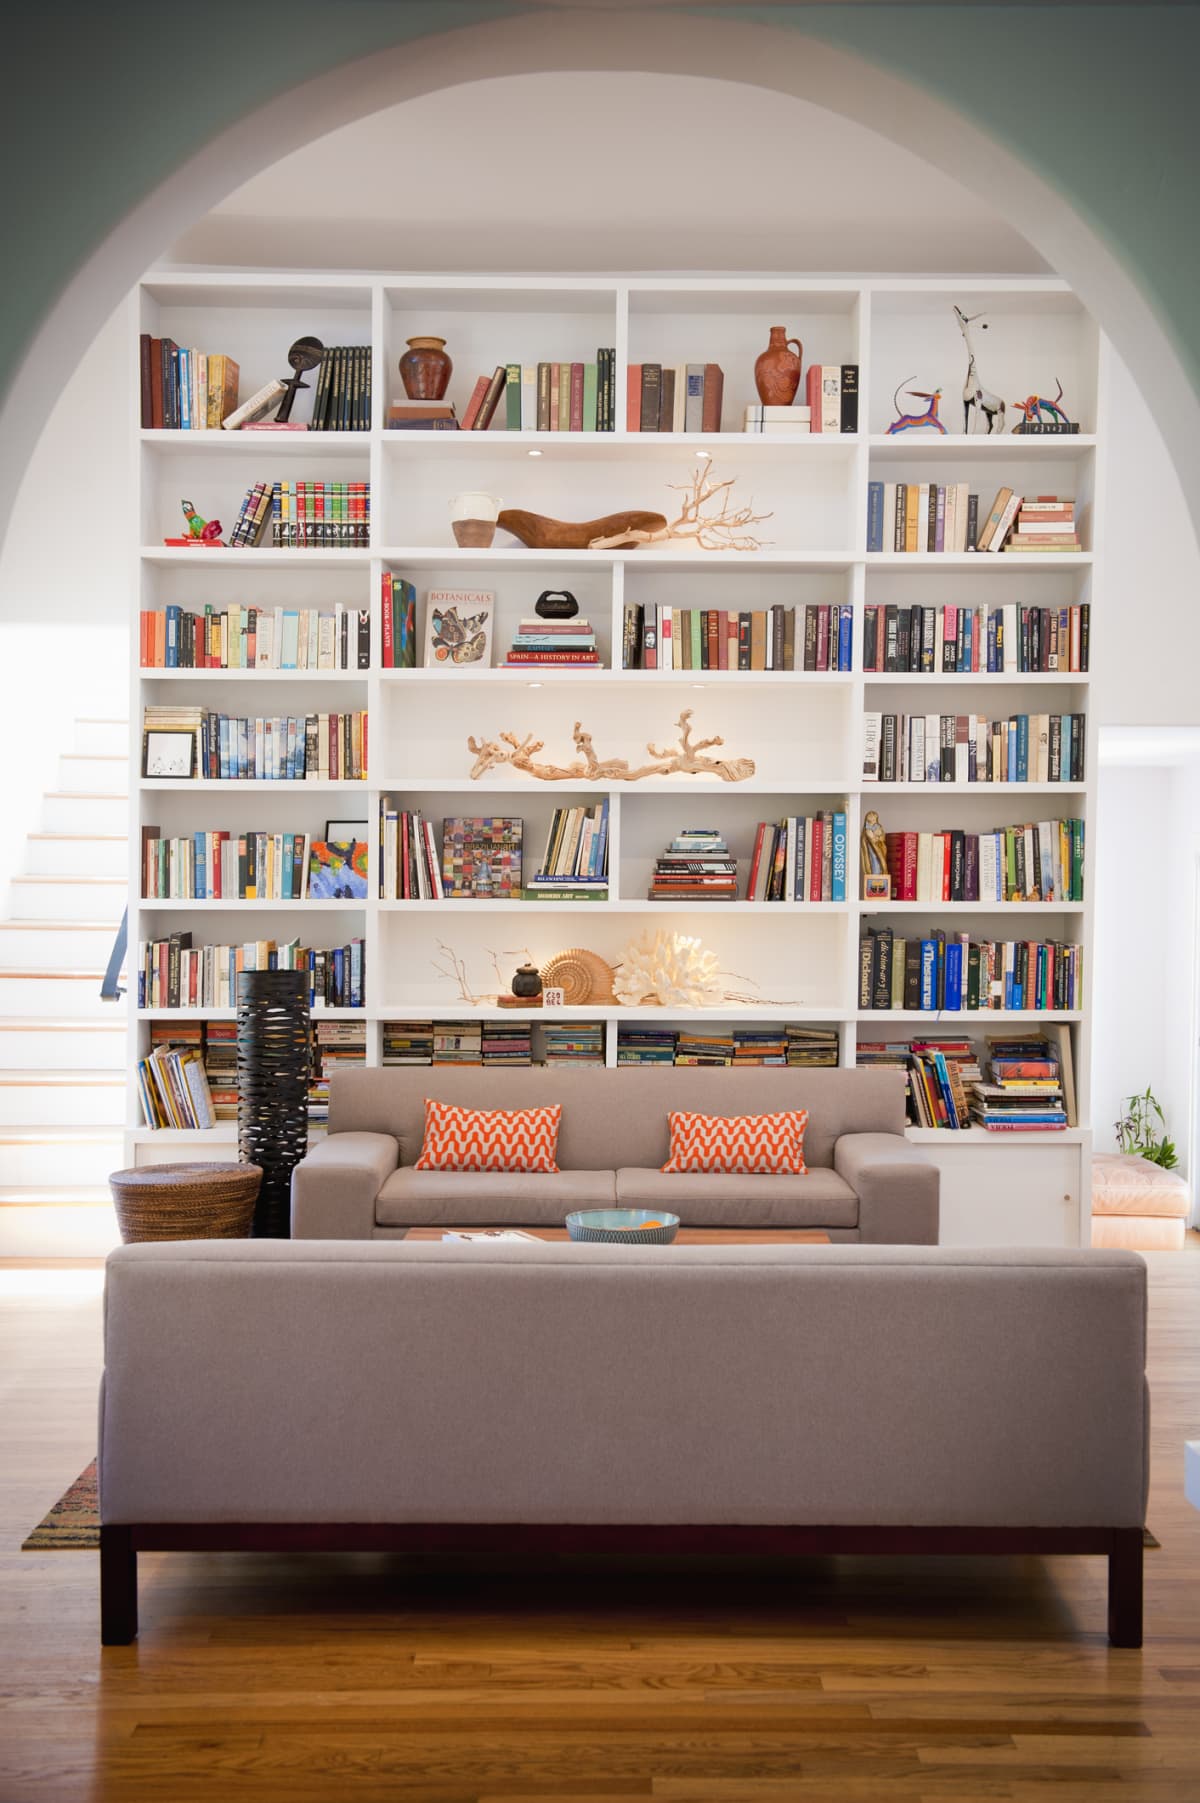 Bookshelves in a living room